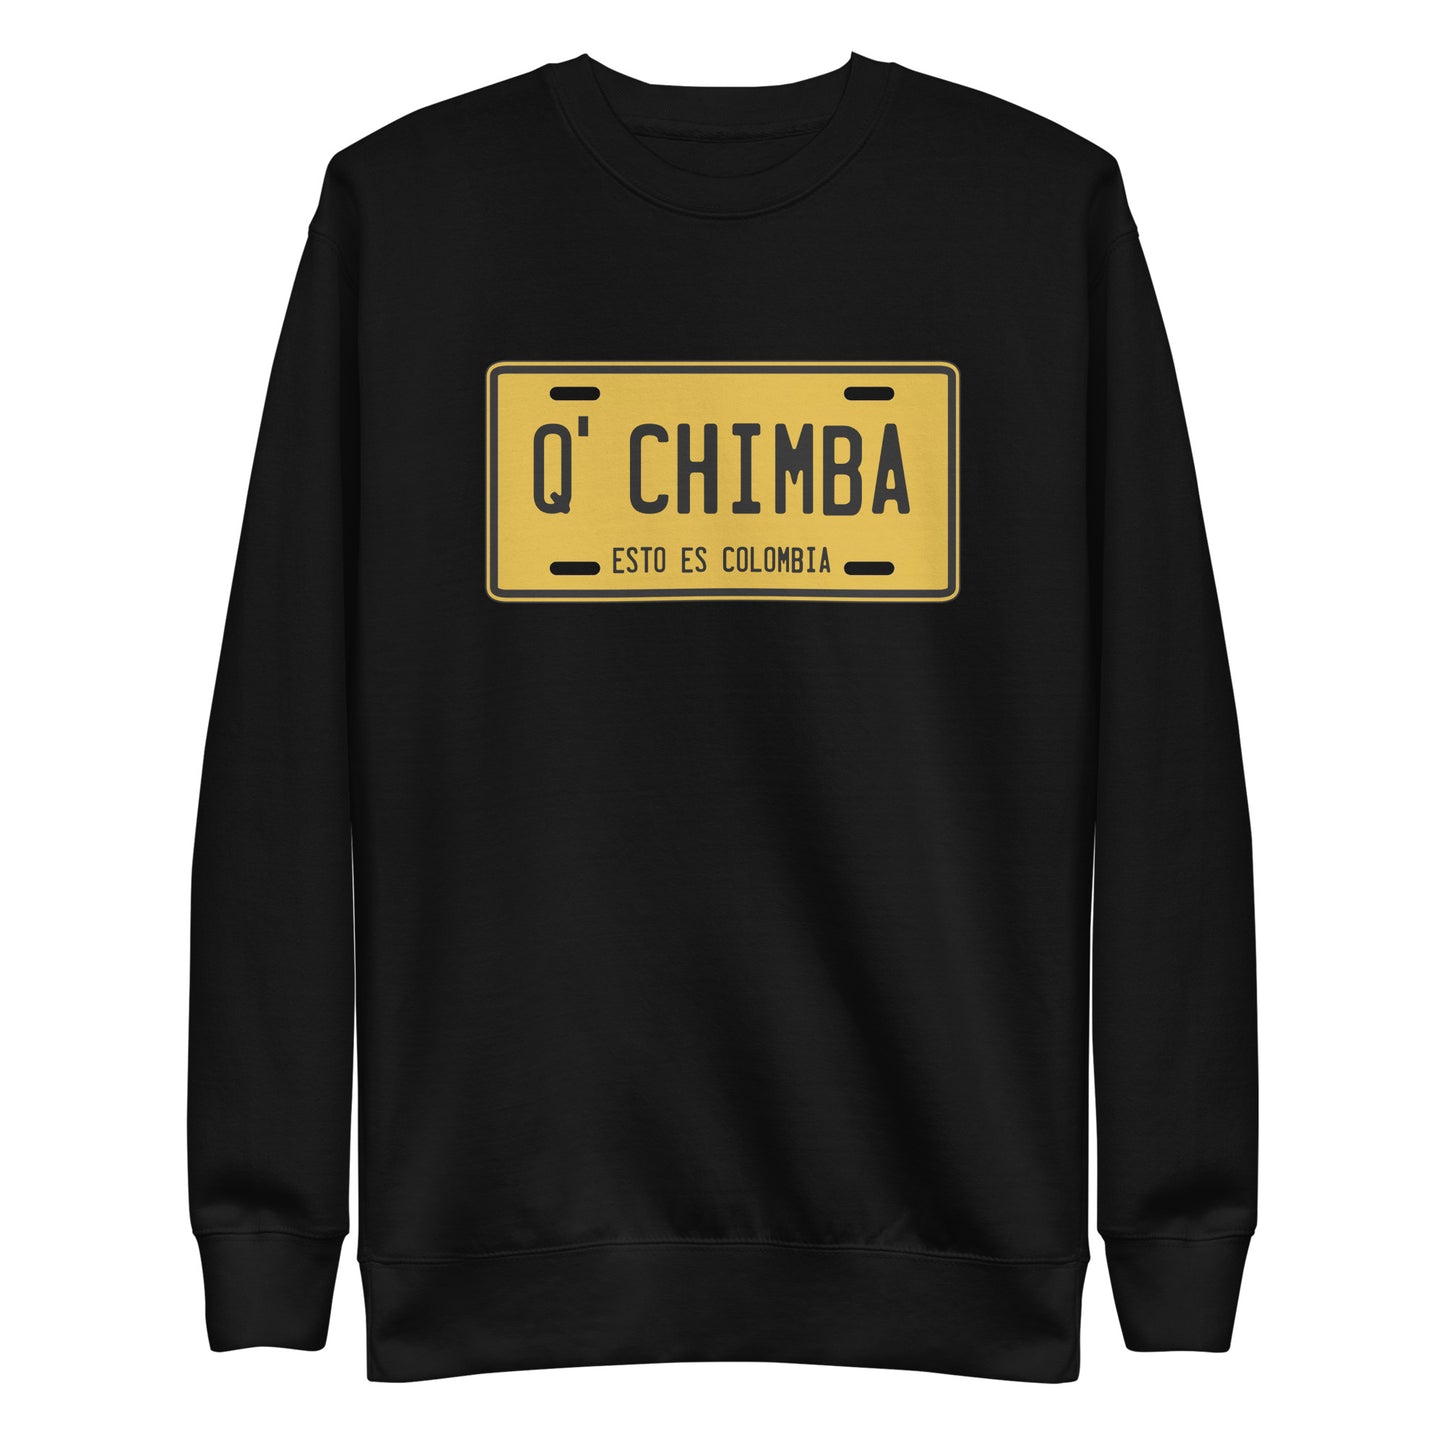 Suéter de Q' Chimba ,Descubre calidad excepcional y estampados duraderos. Encuentra estilo y orgullo en cada prenda. Compra ahora!